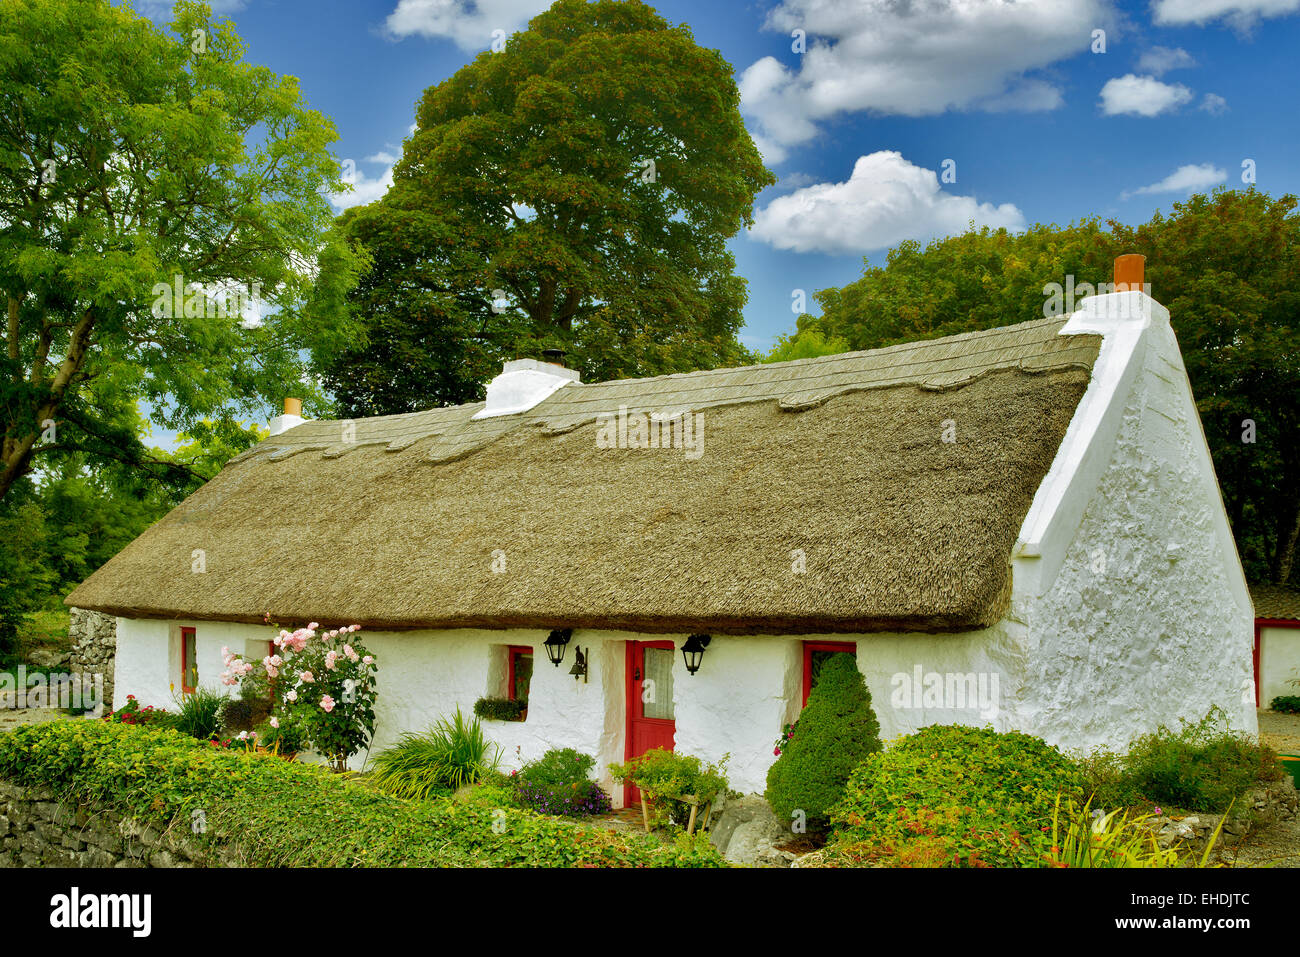 Irische Ferienhaus mit Reetdach. Oughterard, Irland Stockfoto